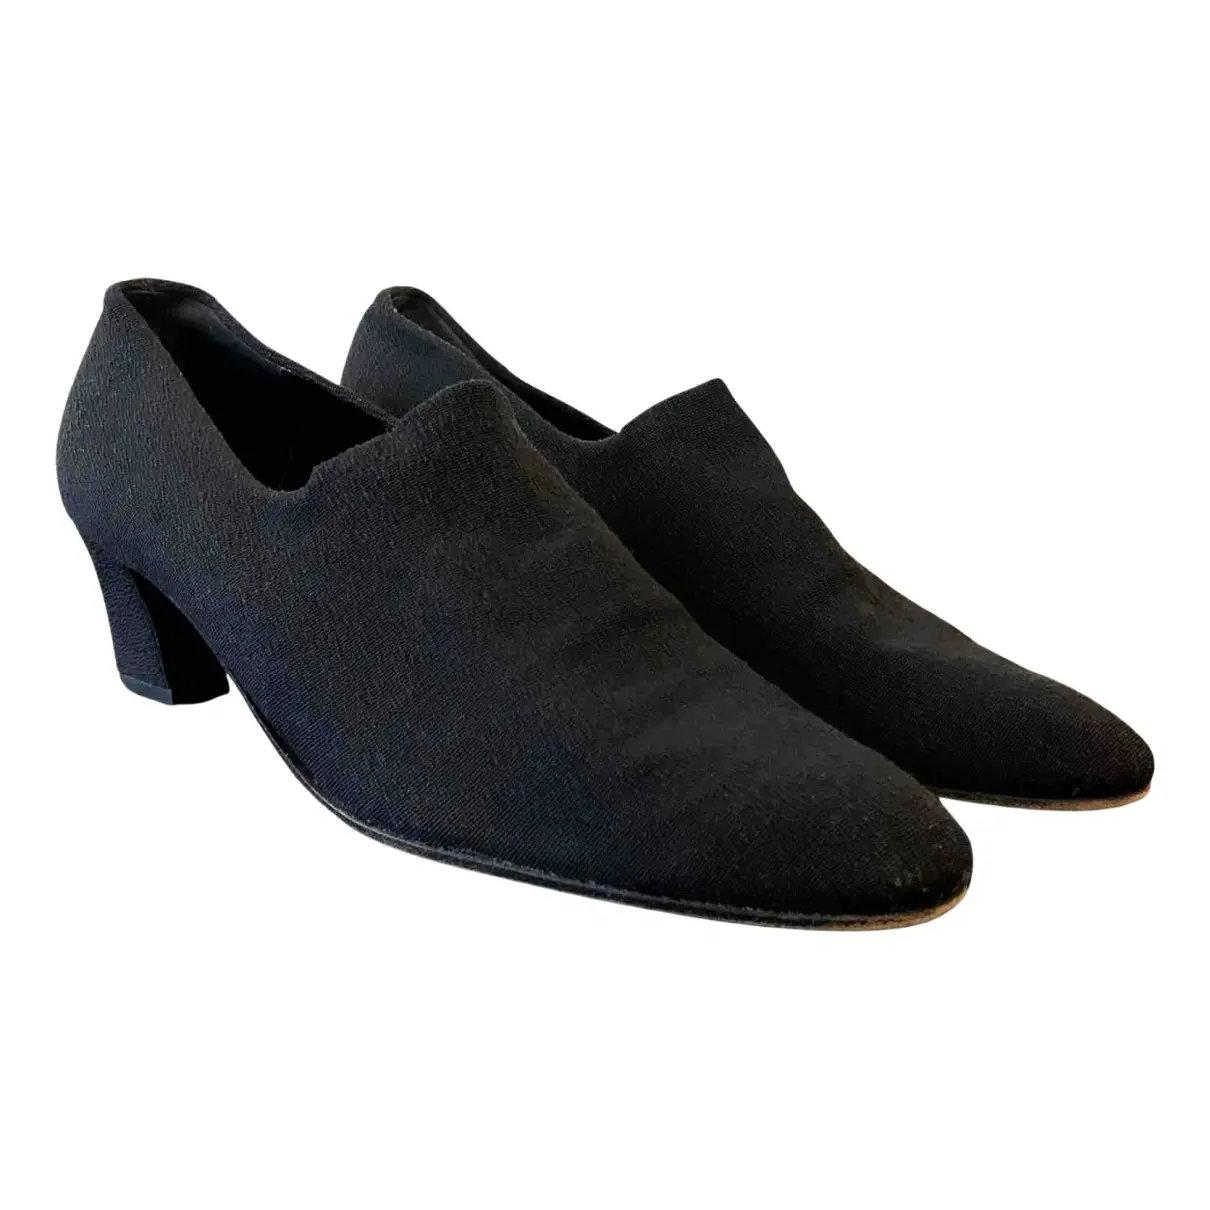 Cloth heels Robert Clergerie - Vintage